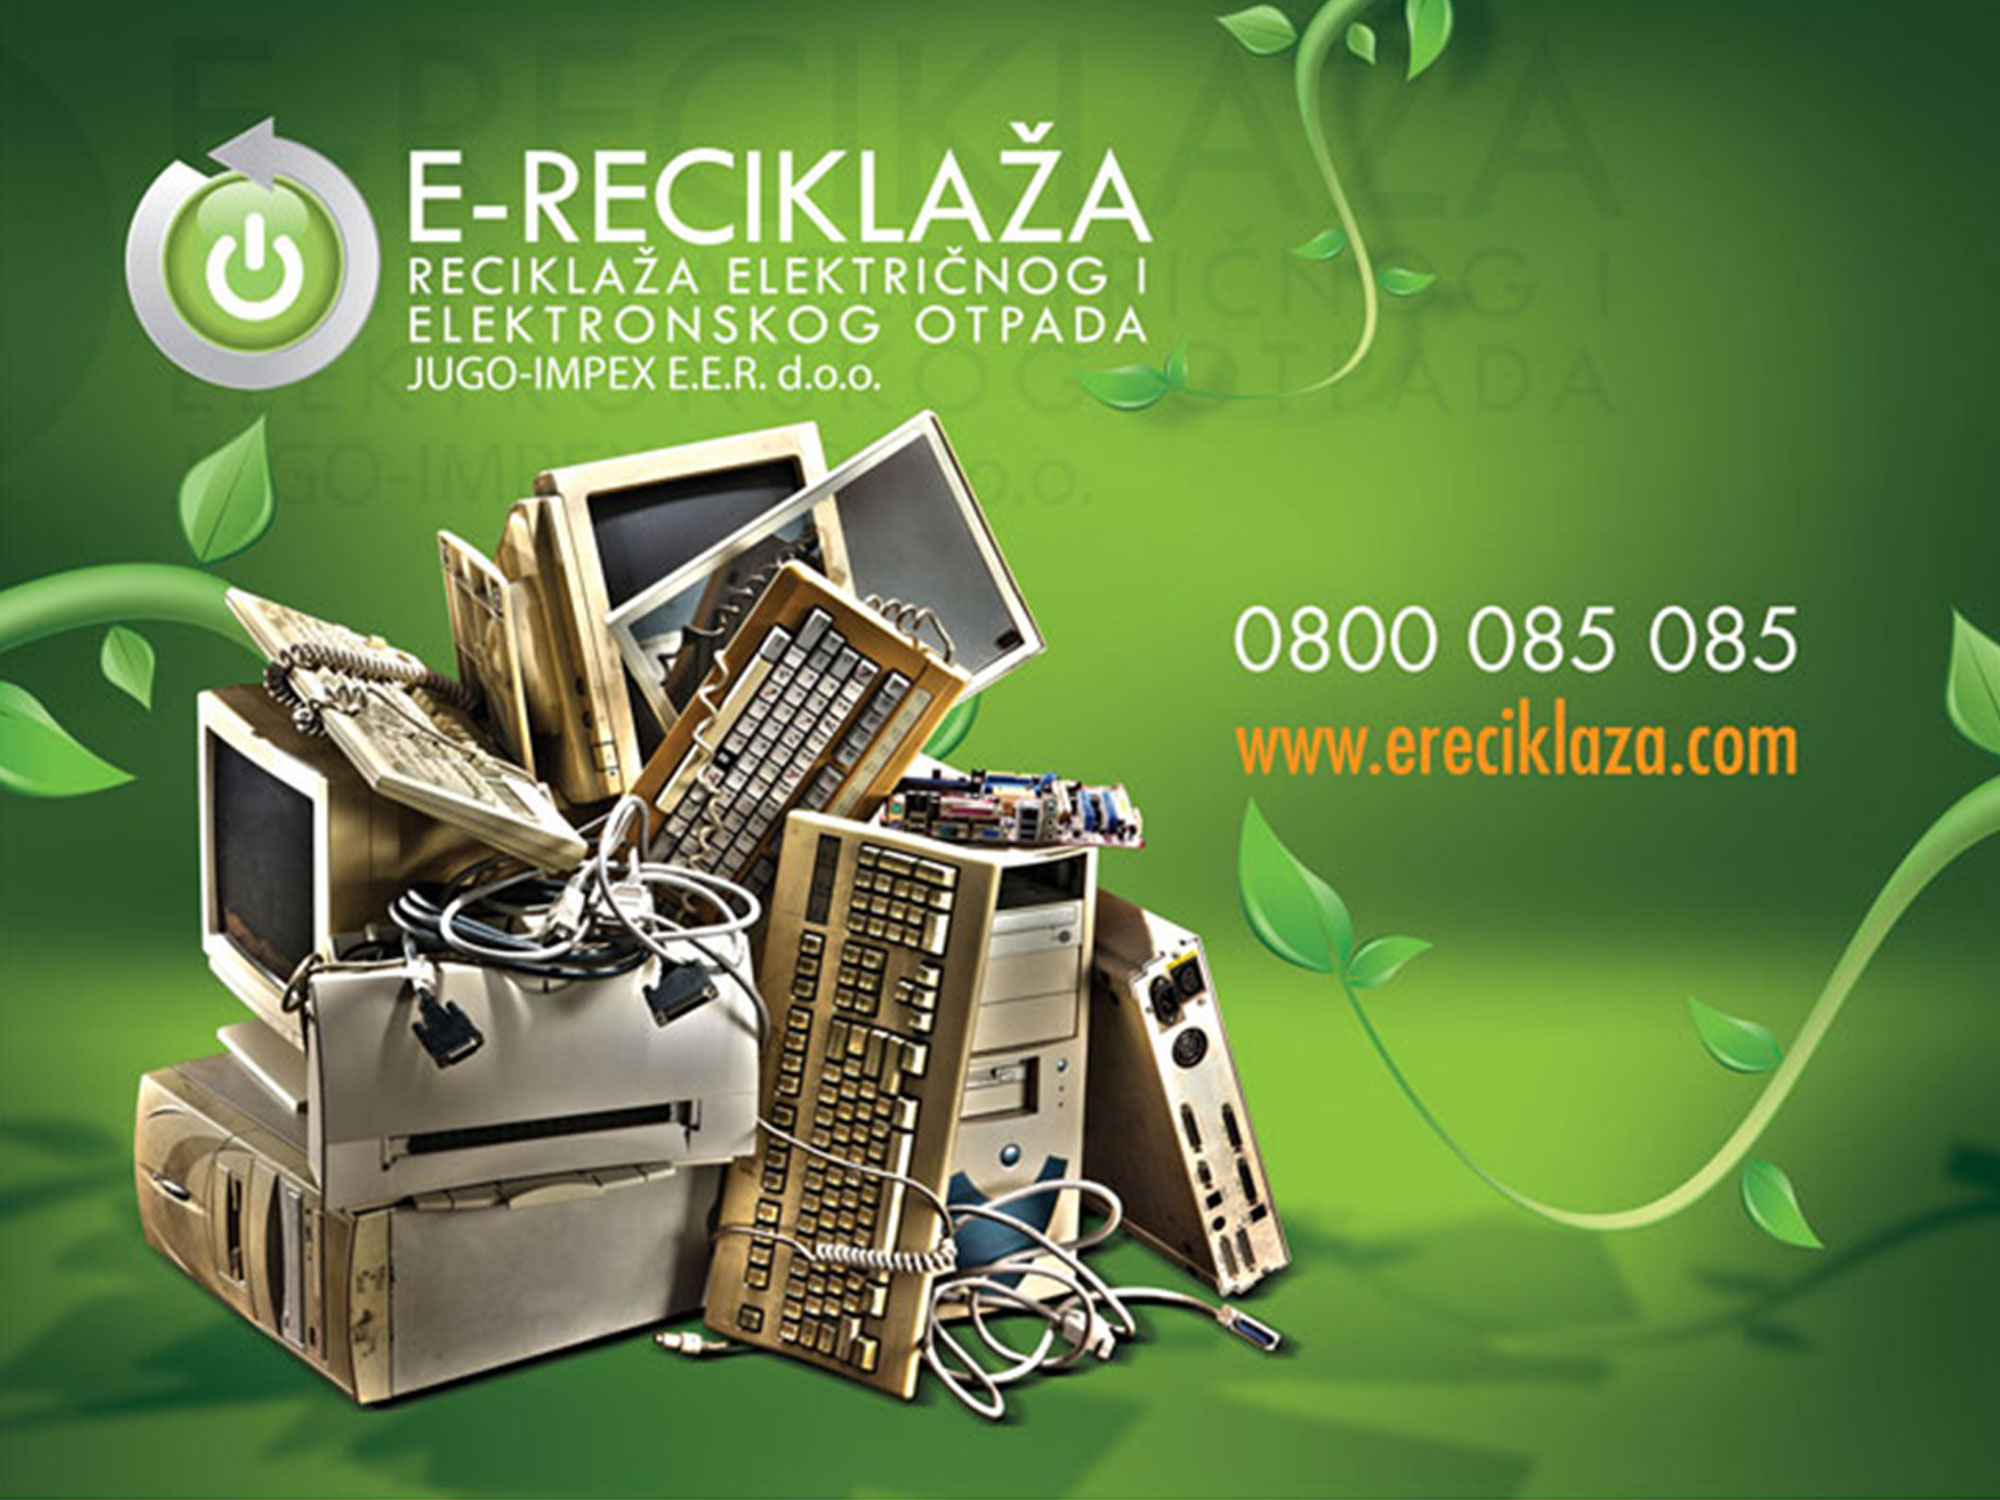 e-reciklaza poster 1